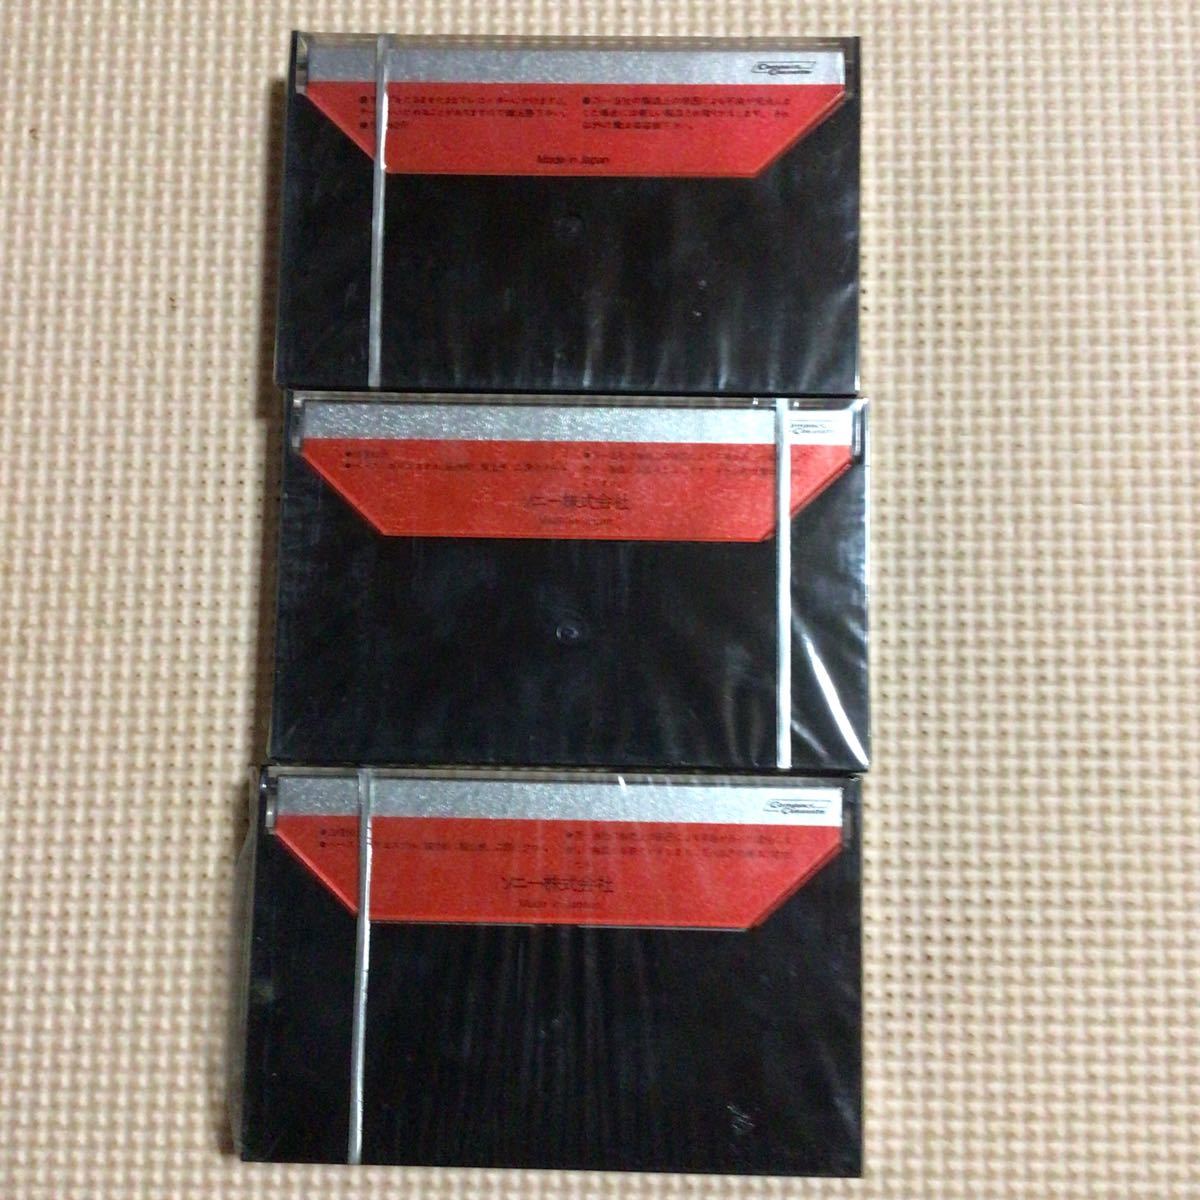 SONY DUAD 60 ferri-chrome カセットテープ3本セット【未開封新品】★_画像3